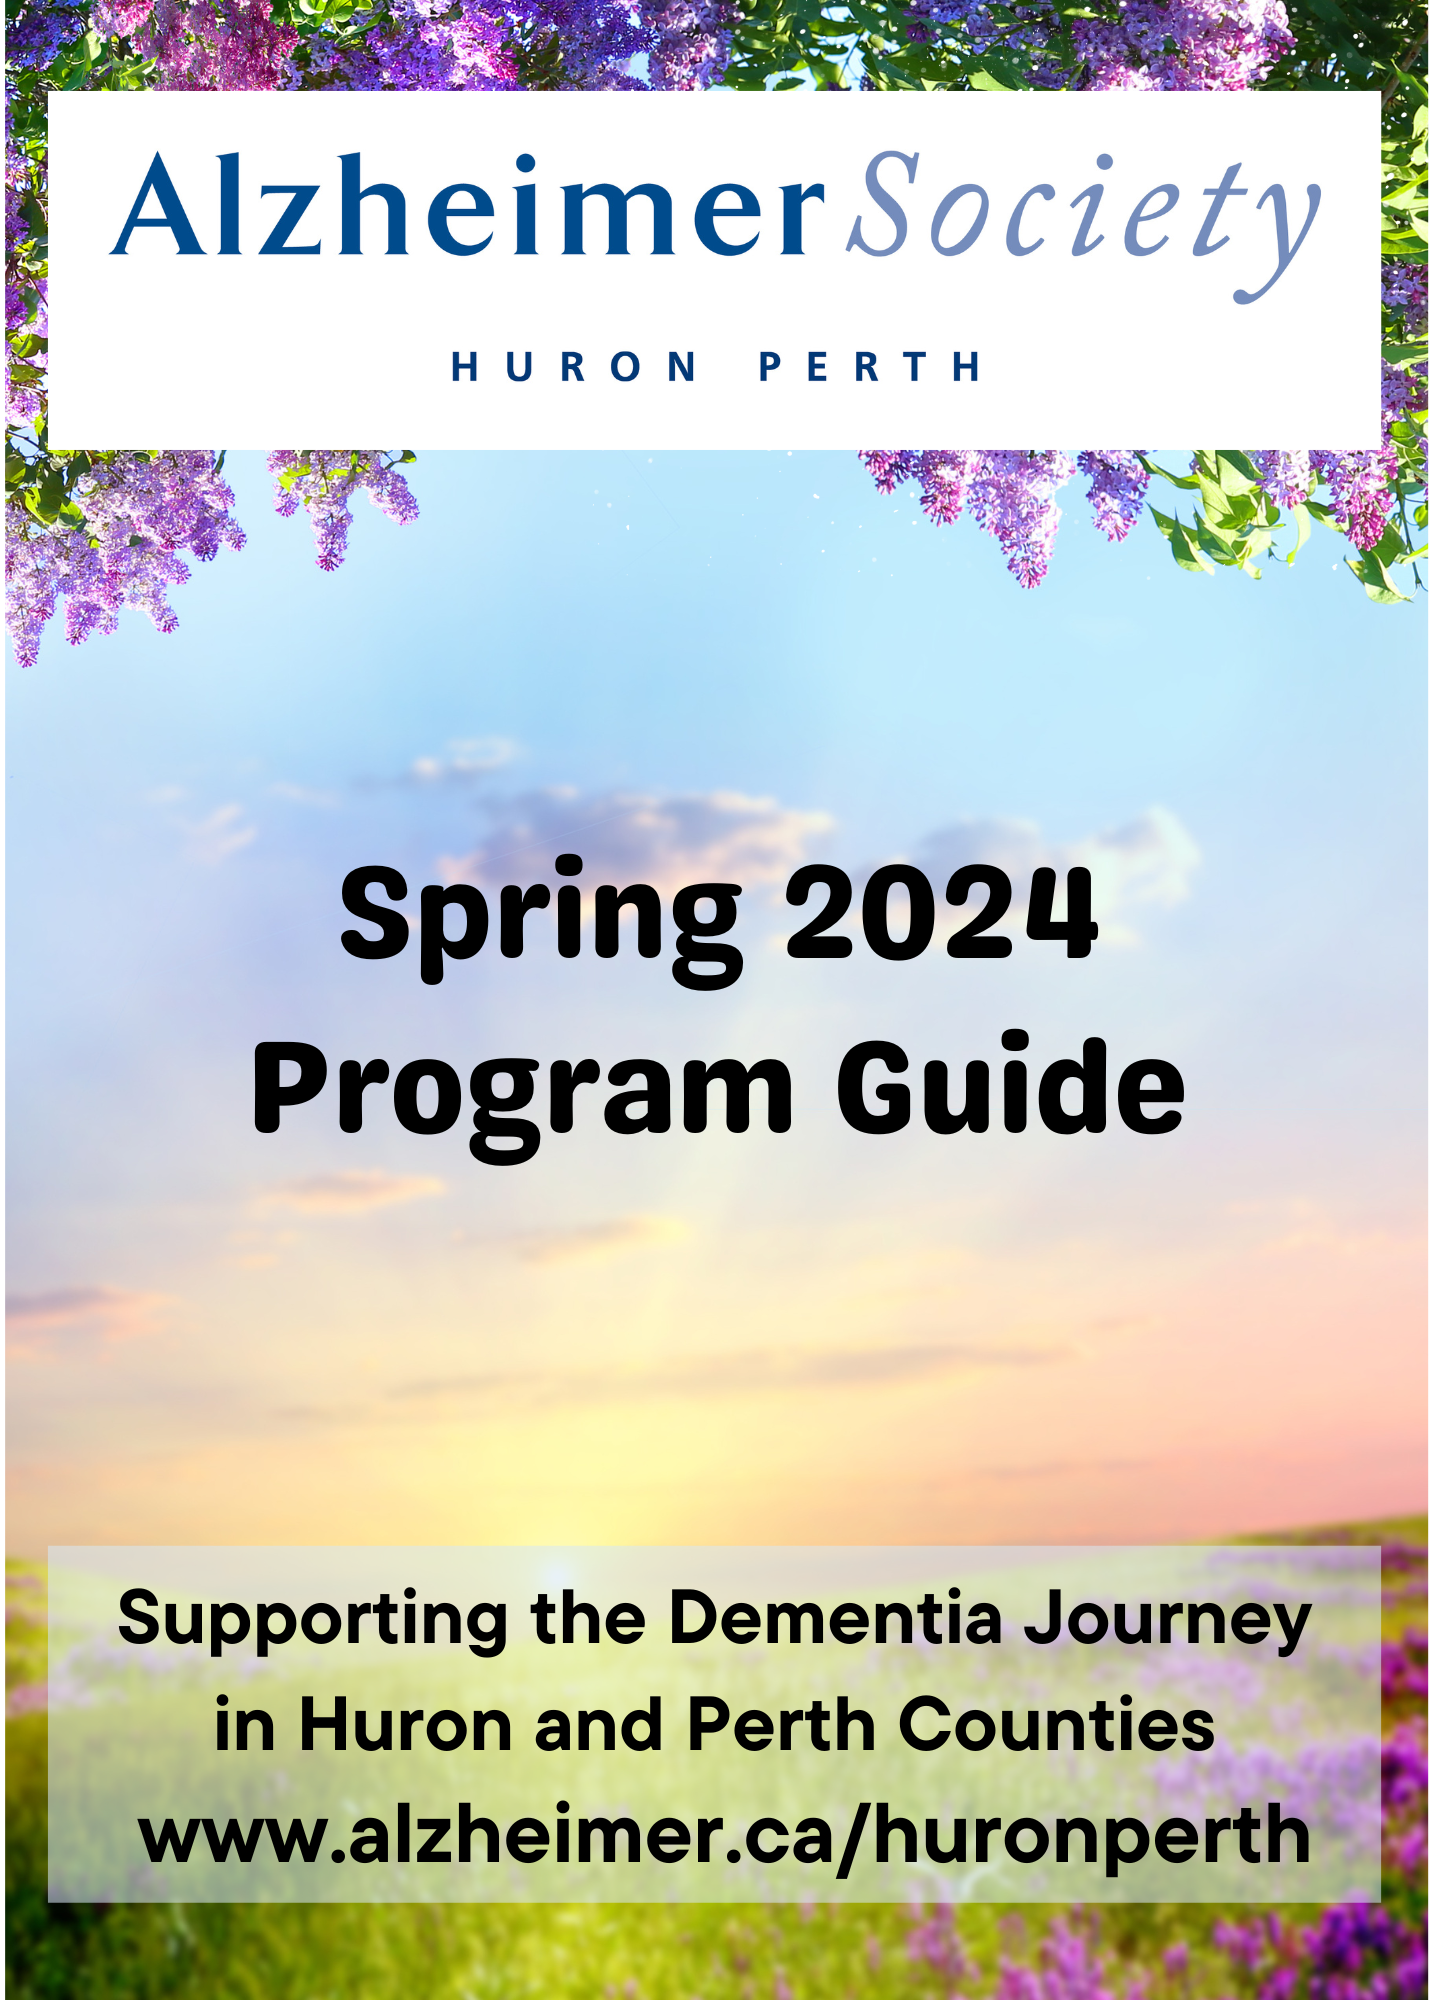 Spring Program Guide 2024